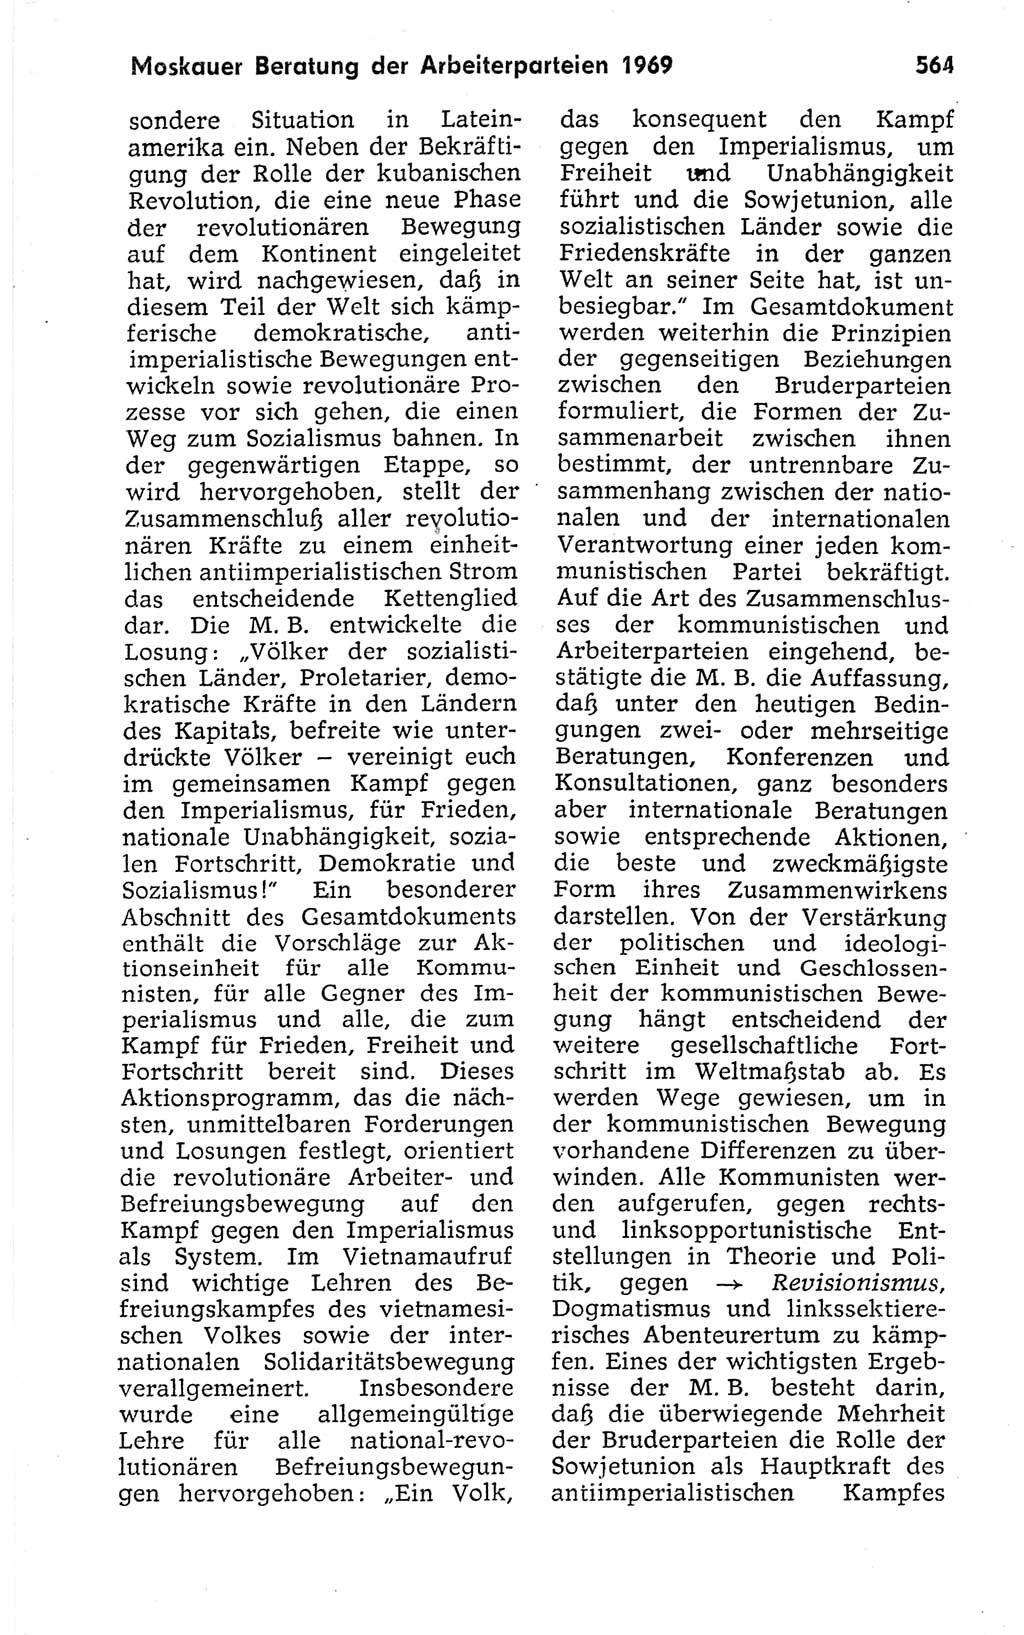 Kleines politisches Wörterbuch [Deutsche Demokratische Republik (DDR)] 1973, Seite 564 (Kl. pol. Wb. DDR 1973, S. 564)